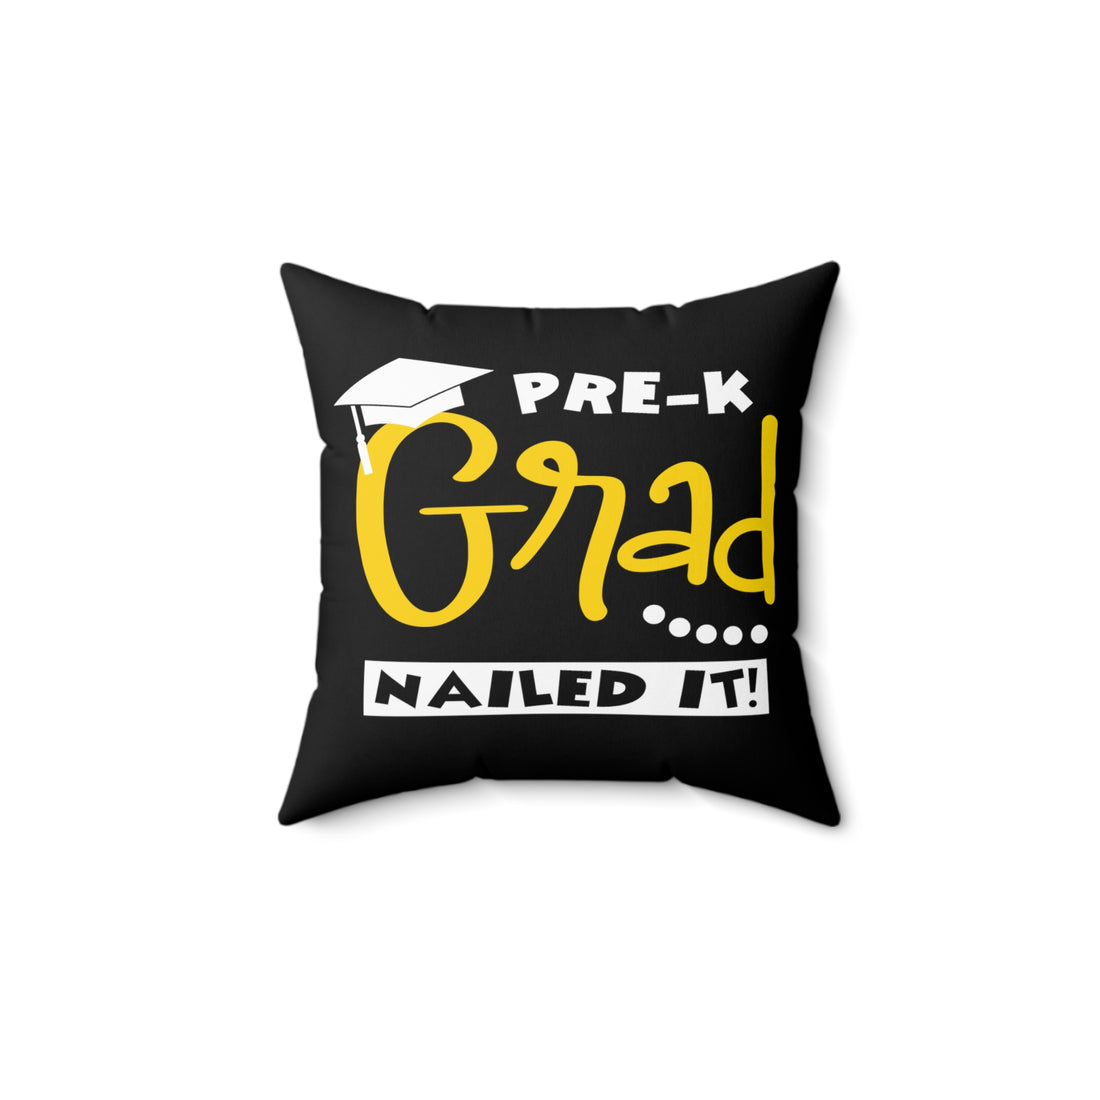 PRE-K Grad, Nailed It - Black Pillow